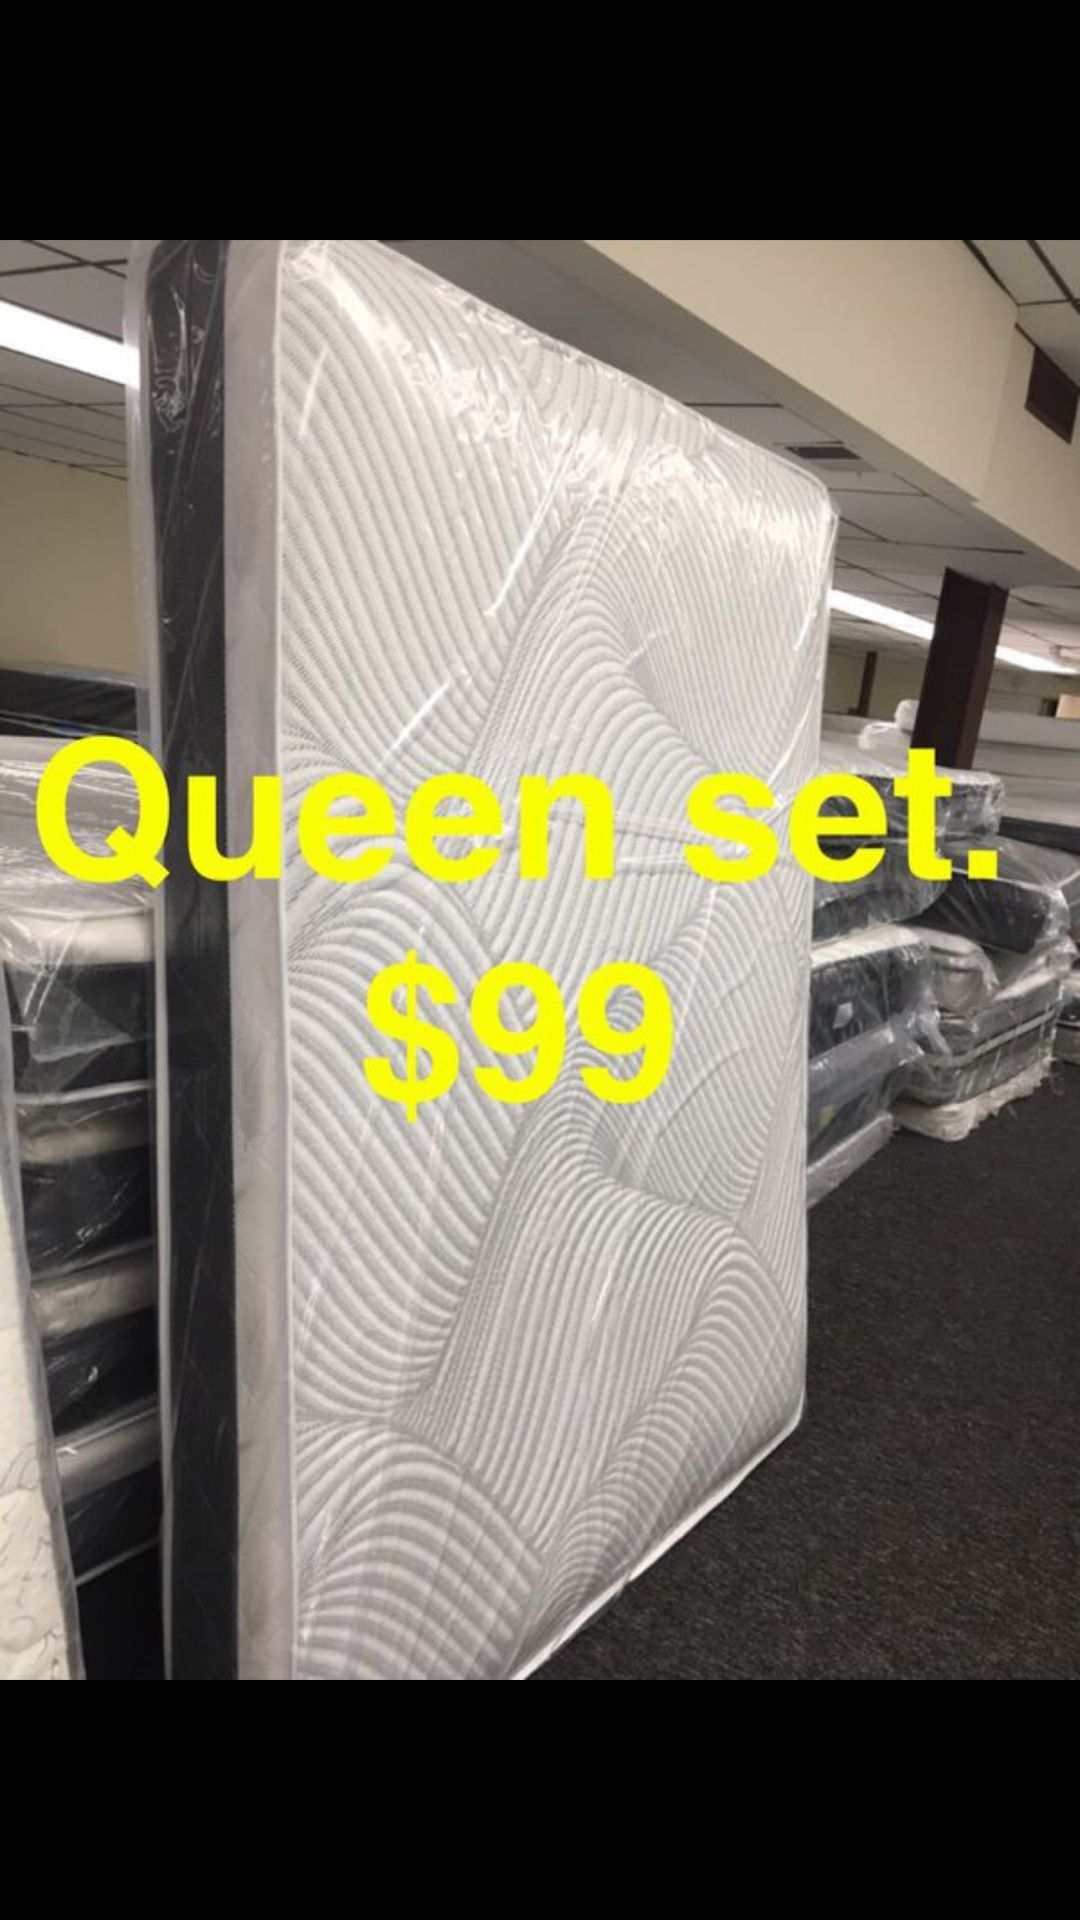 Queen set $99